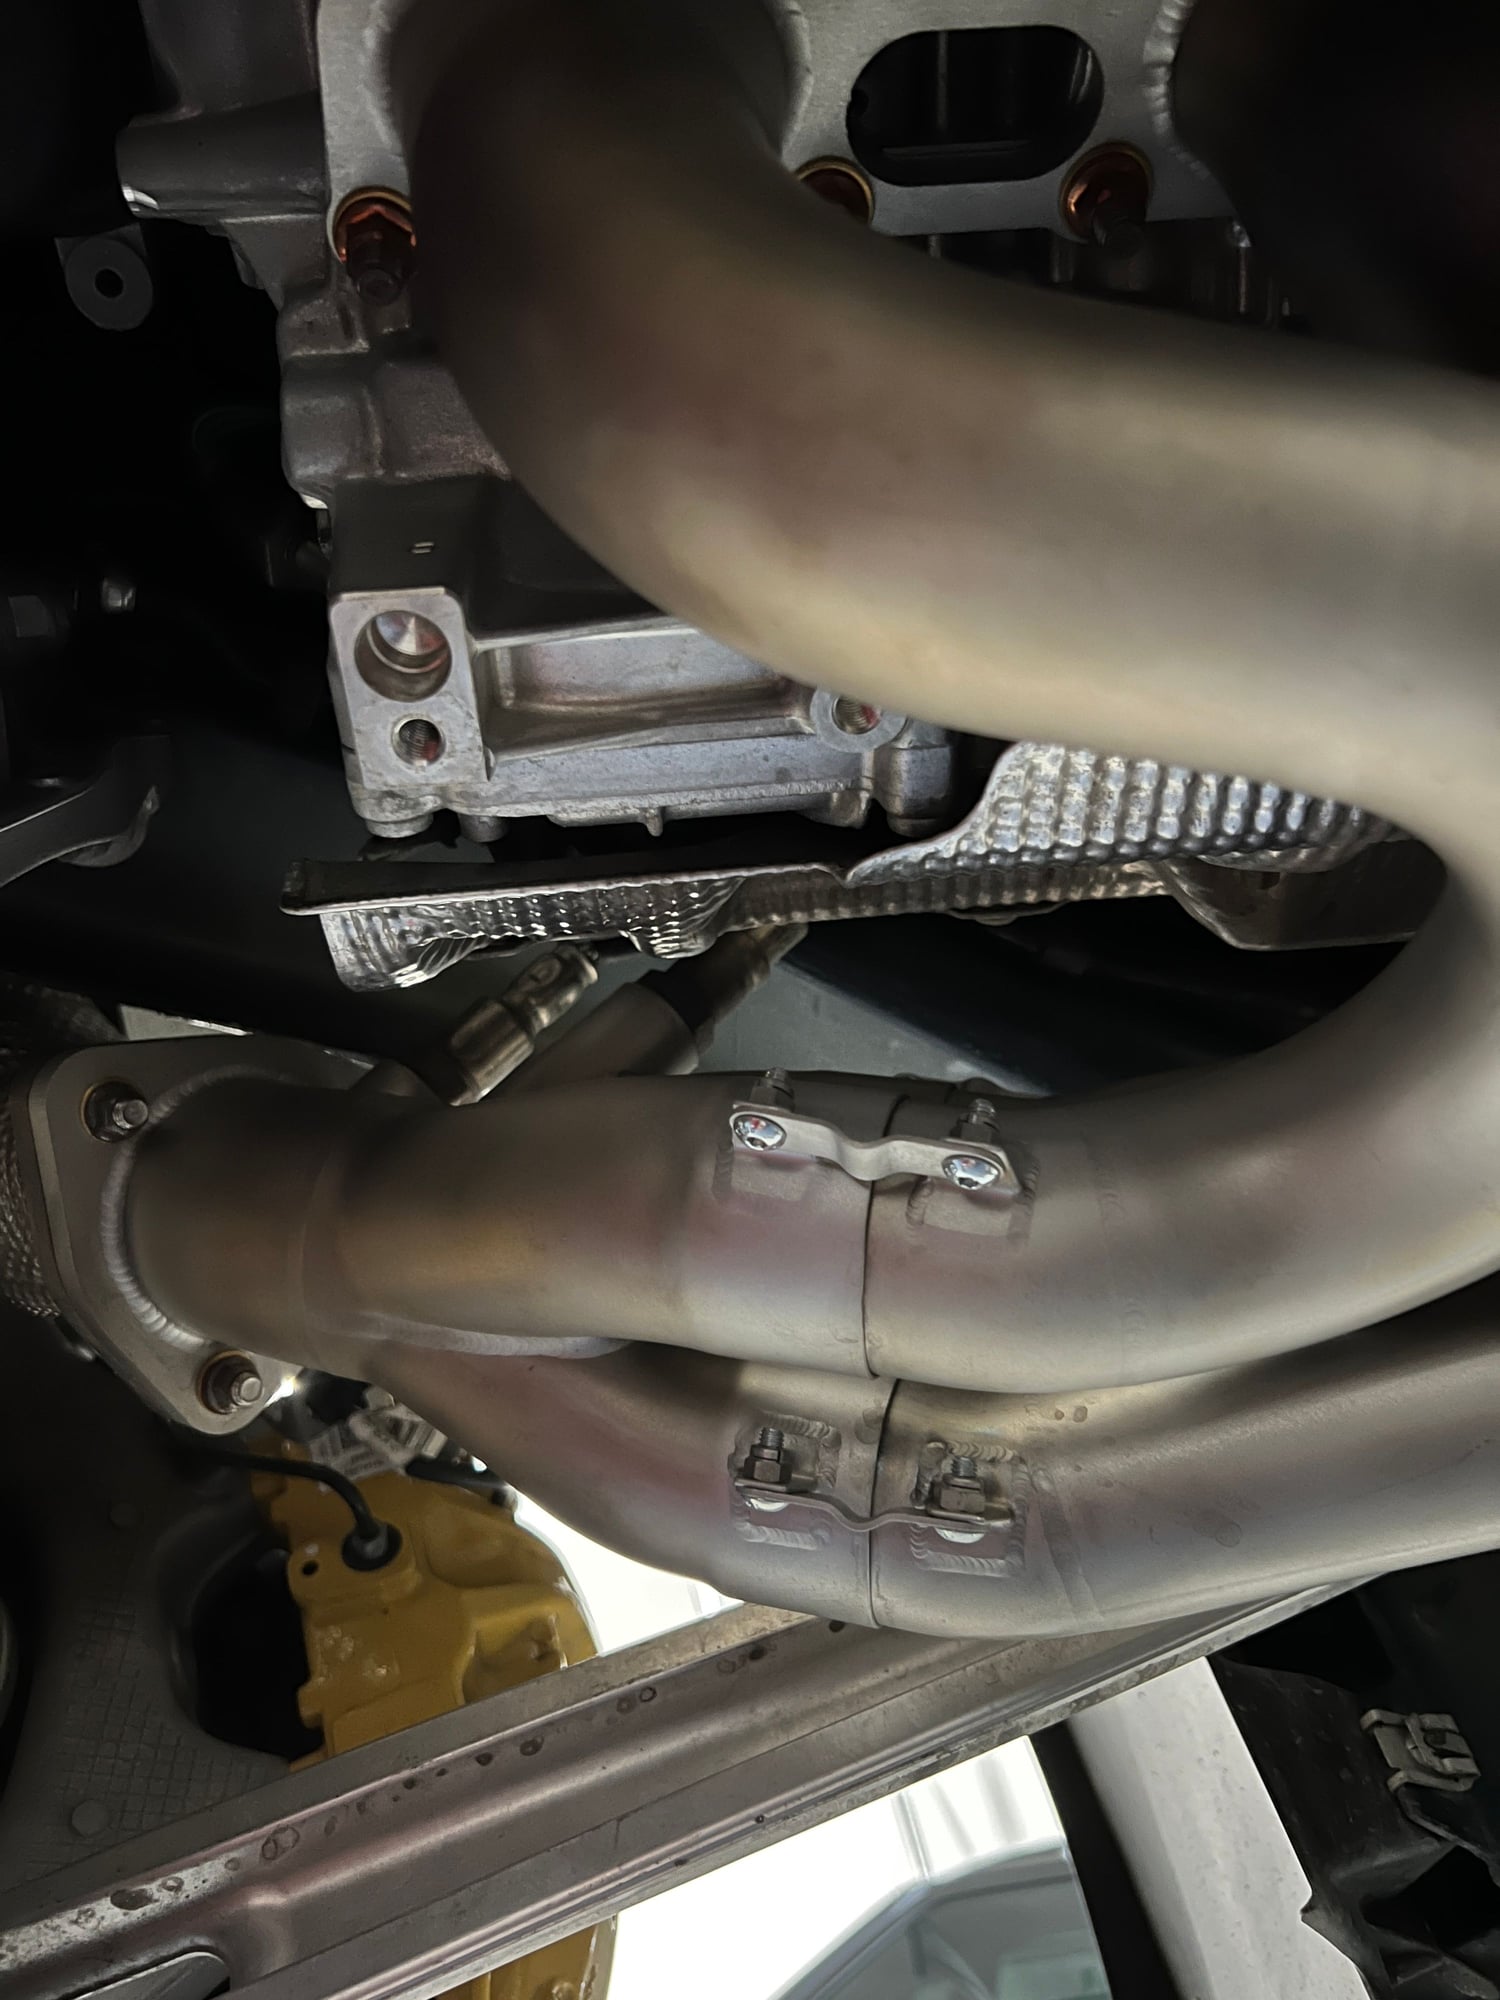 Engine - Exhaust - JCR 718 Inconel race Manifolds GT4 Spyder GTS 4.0 - Used - 2020 to 2022 Porsche 718 Cayman - 2020 to 2022 Porsche 718 Spyder - 2020 to 2022 Porsche 718 - Dakota Dunes, SD 57049, United States